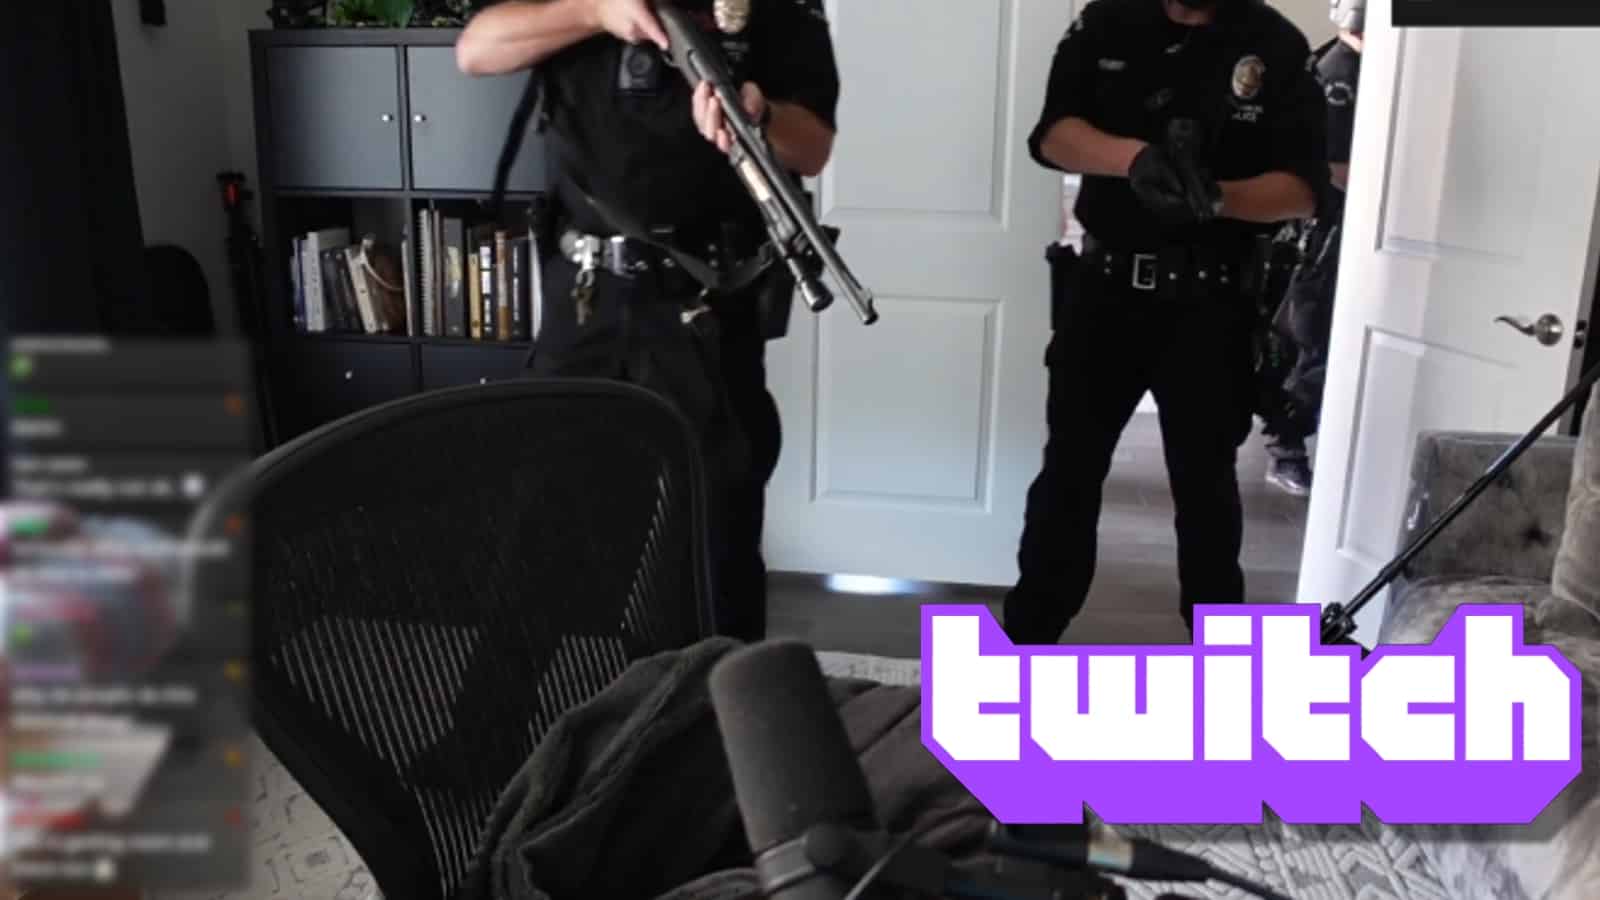 Game thủ Valorant chuyên nghiệp bị đột kích bởi cảnh sát khi đang stream Twitch, đe dọa đến tính mạng nhiều người